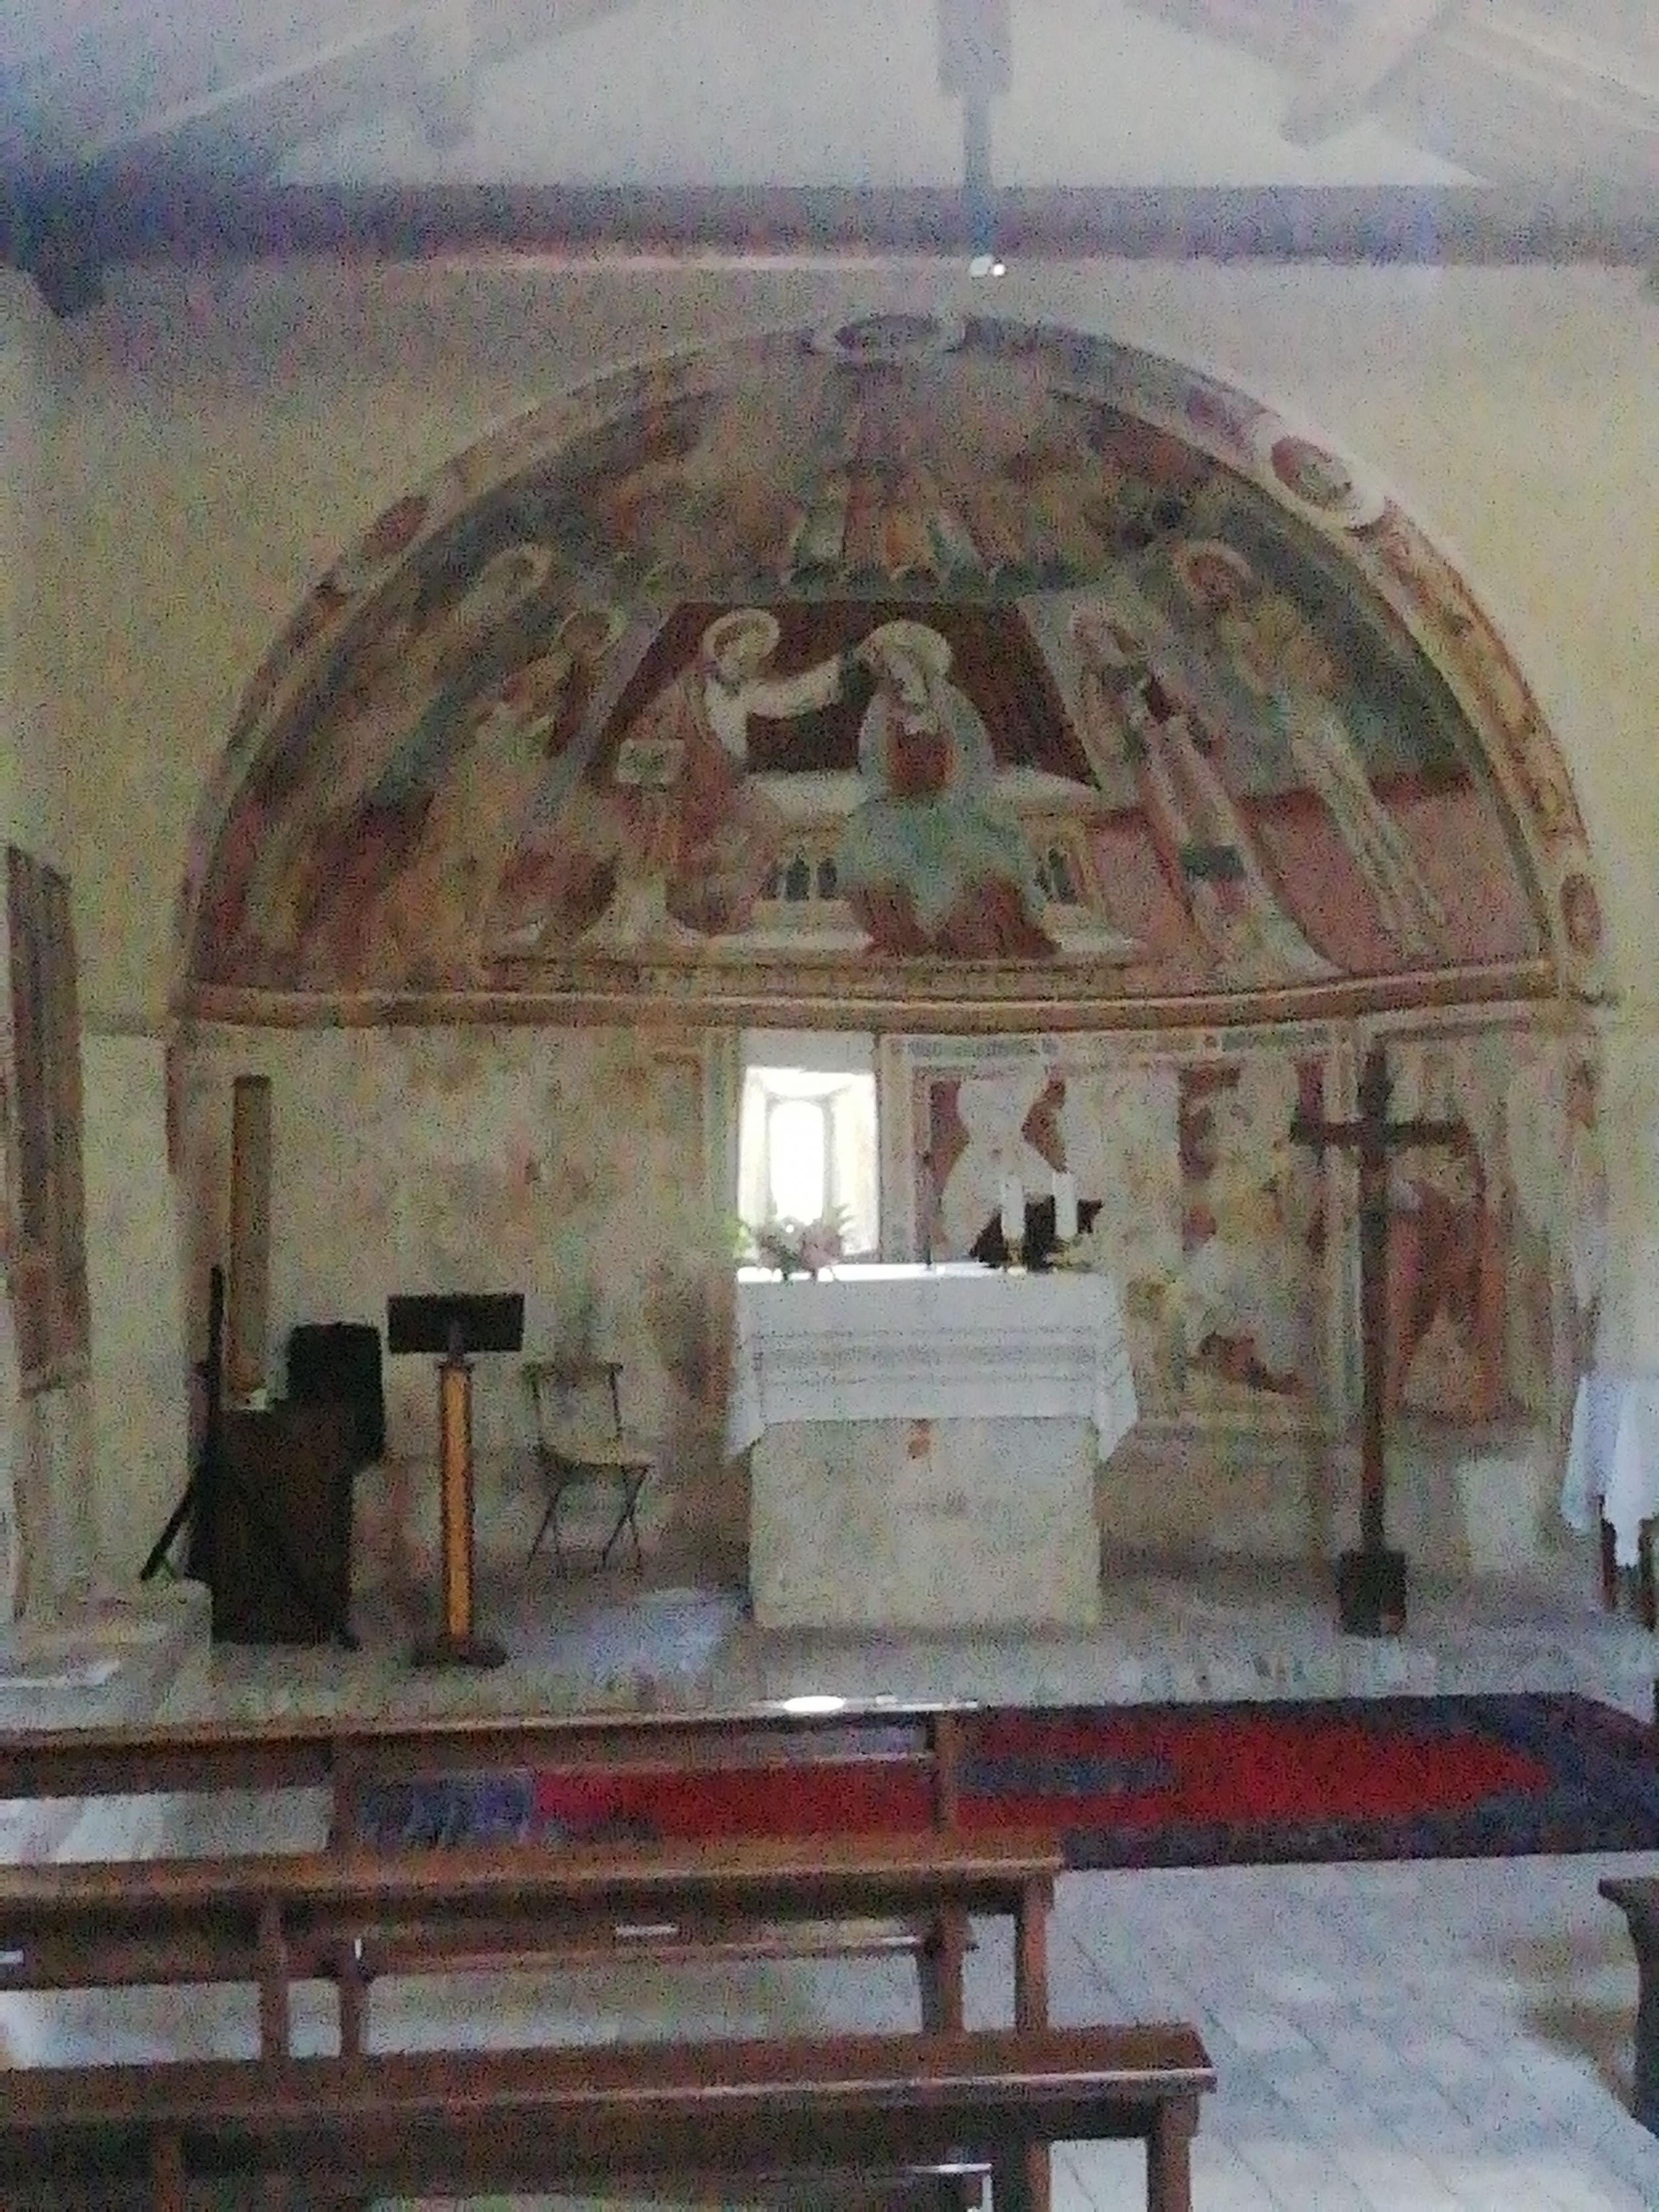 L’interno della chiesa con gli affreschi che rappresentano una processione di santi, fra cui sant’Adamo.